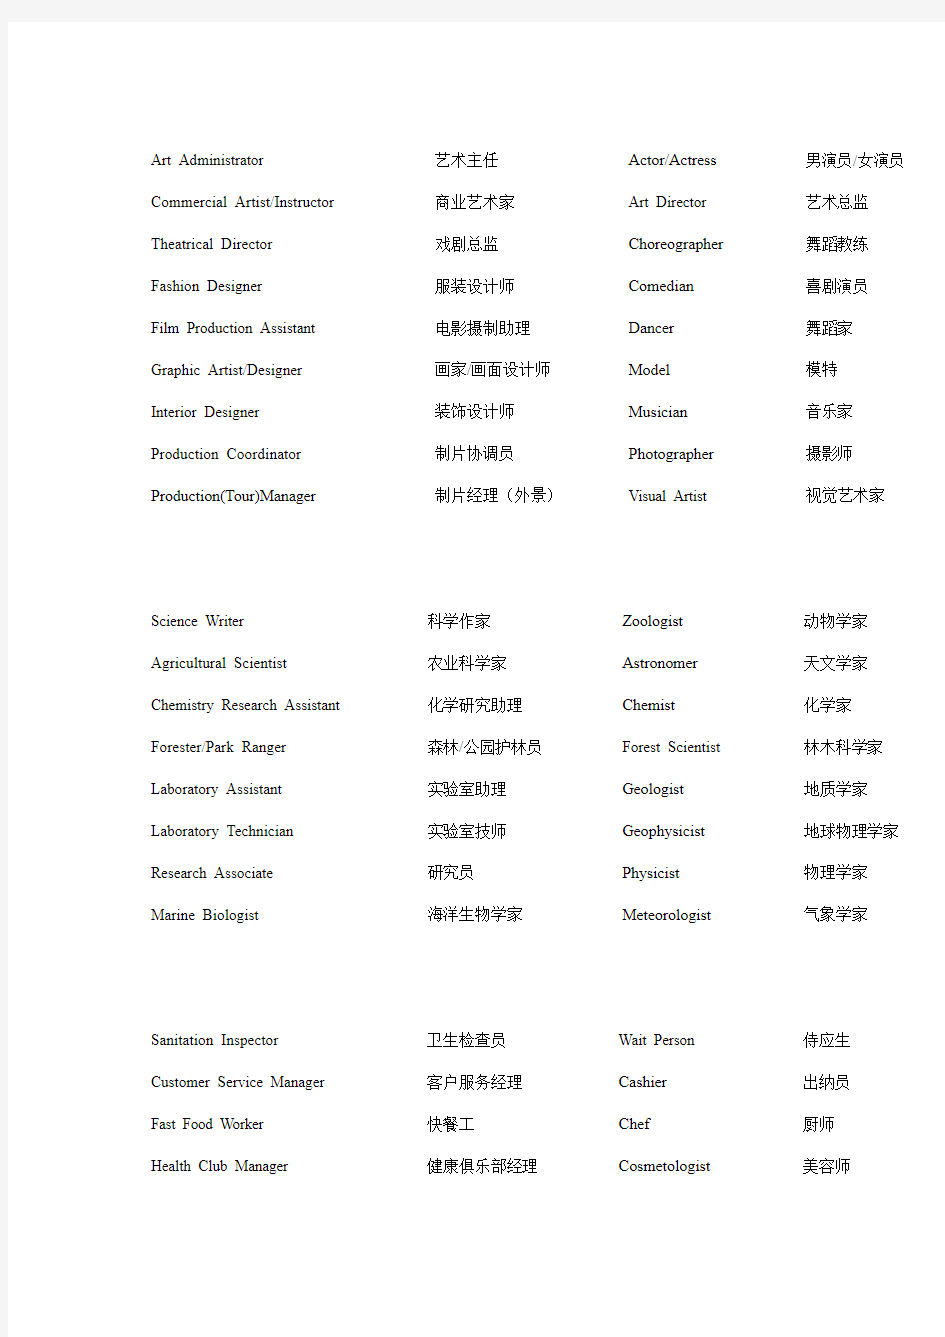 中英文职位对照表